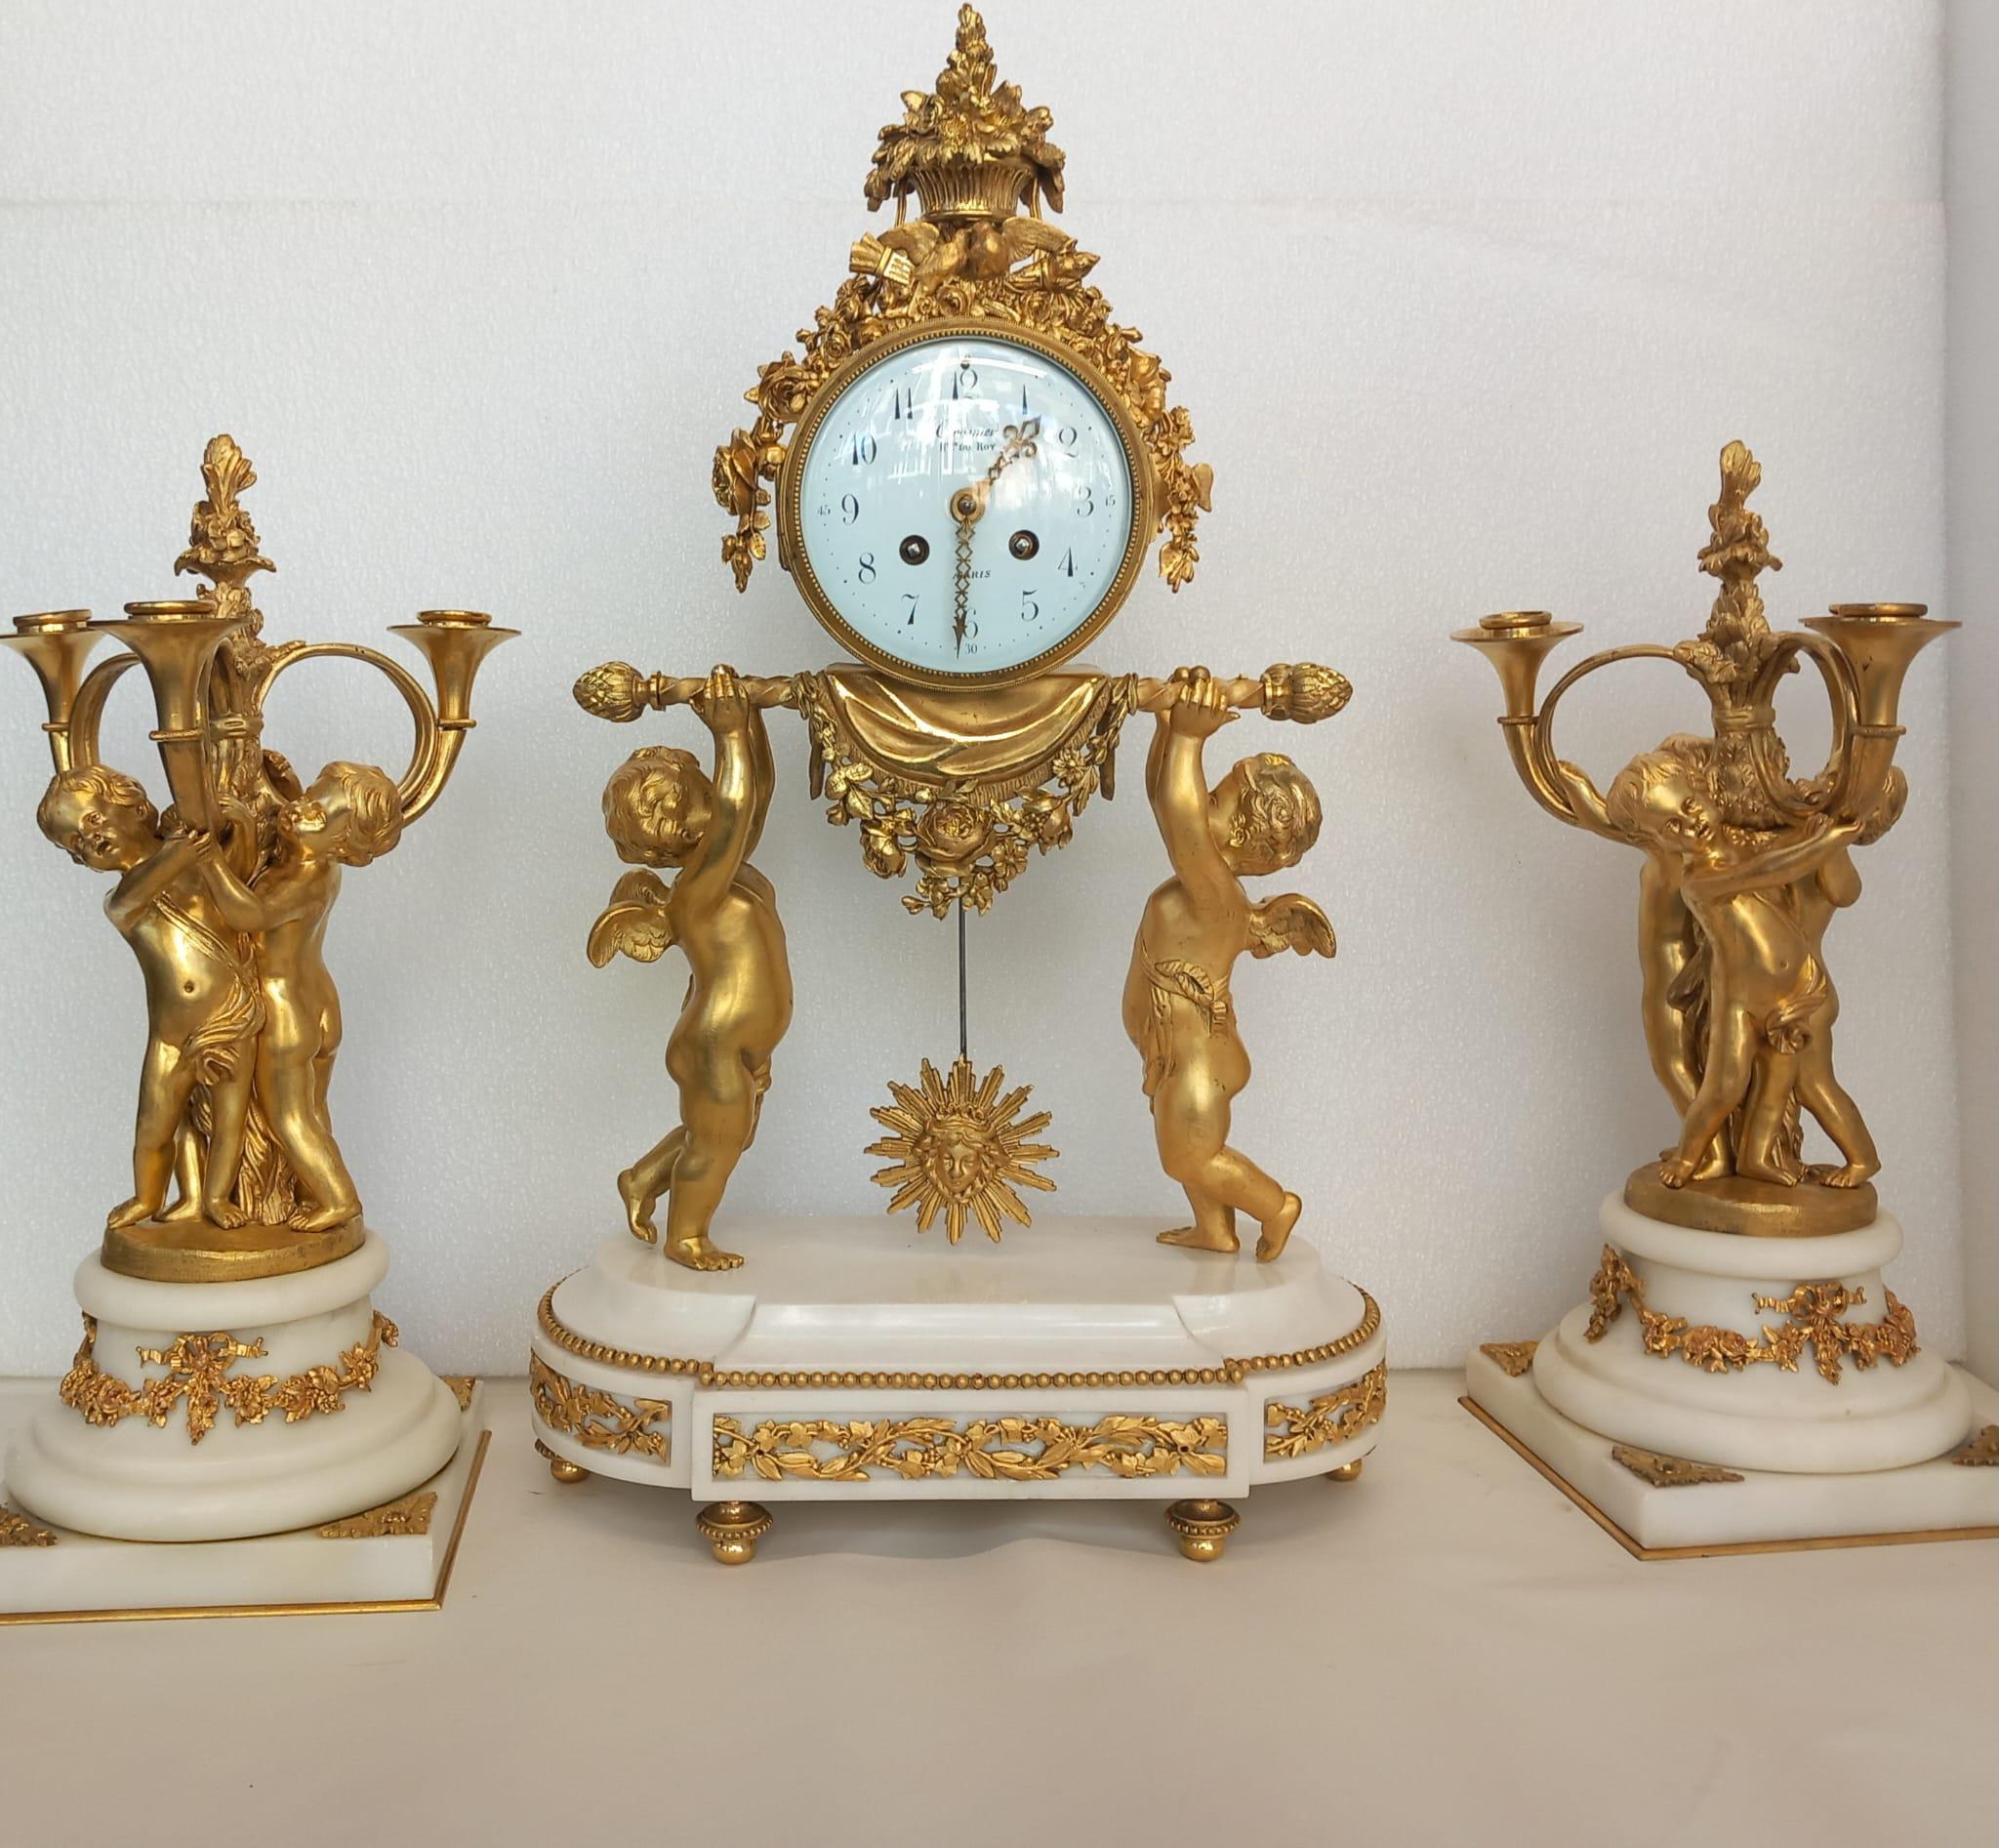 Französisch 19. Jahrhundert vergoldete Bronze Uhr Garnitur. Die Uhr hat zwei Putten, die die Uhr halten, auf einem Sockel aus weißem Marmor und Ormolu montiert. Die weiße Emaille hat arabische Zahlen und ziselierte vergoldete Zeiger. Die Seitenteile